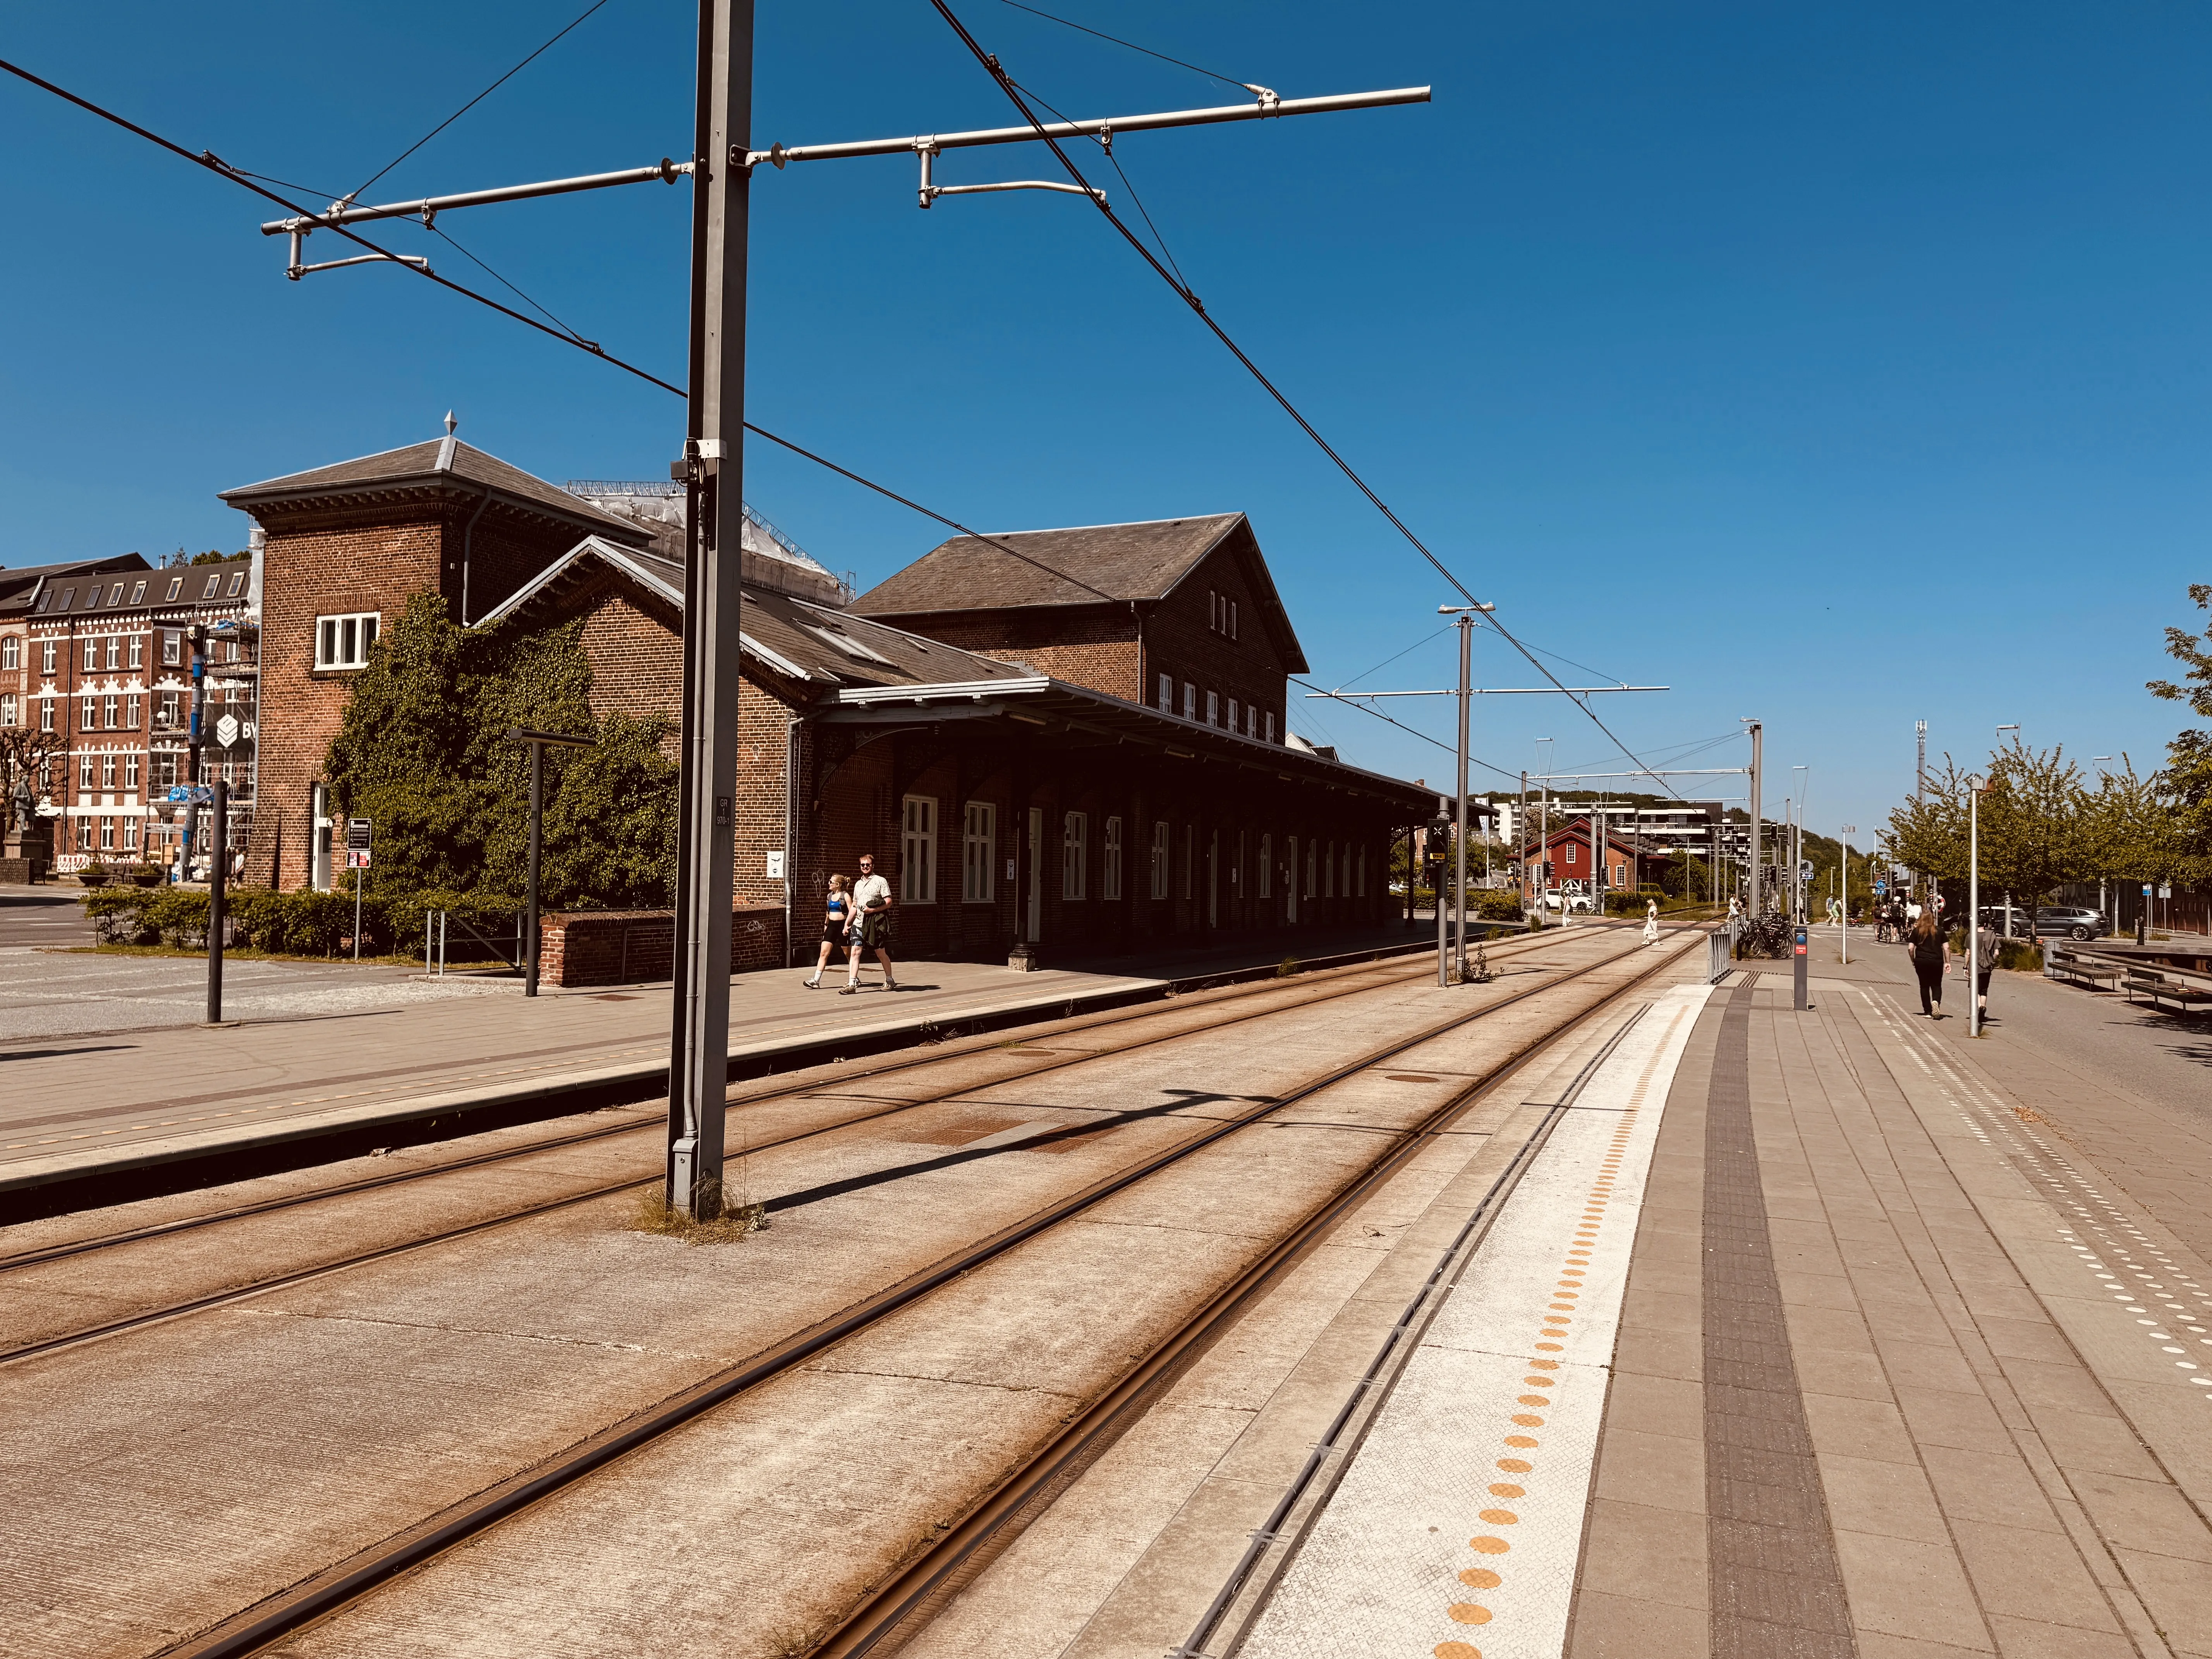 Billede af Østbanetorvet Station.